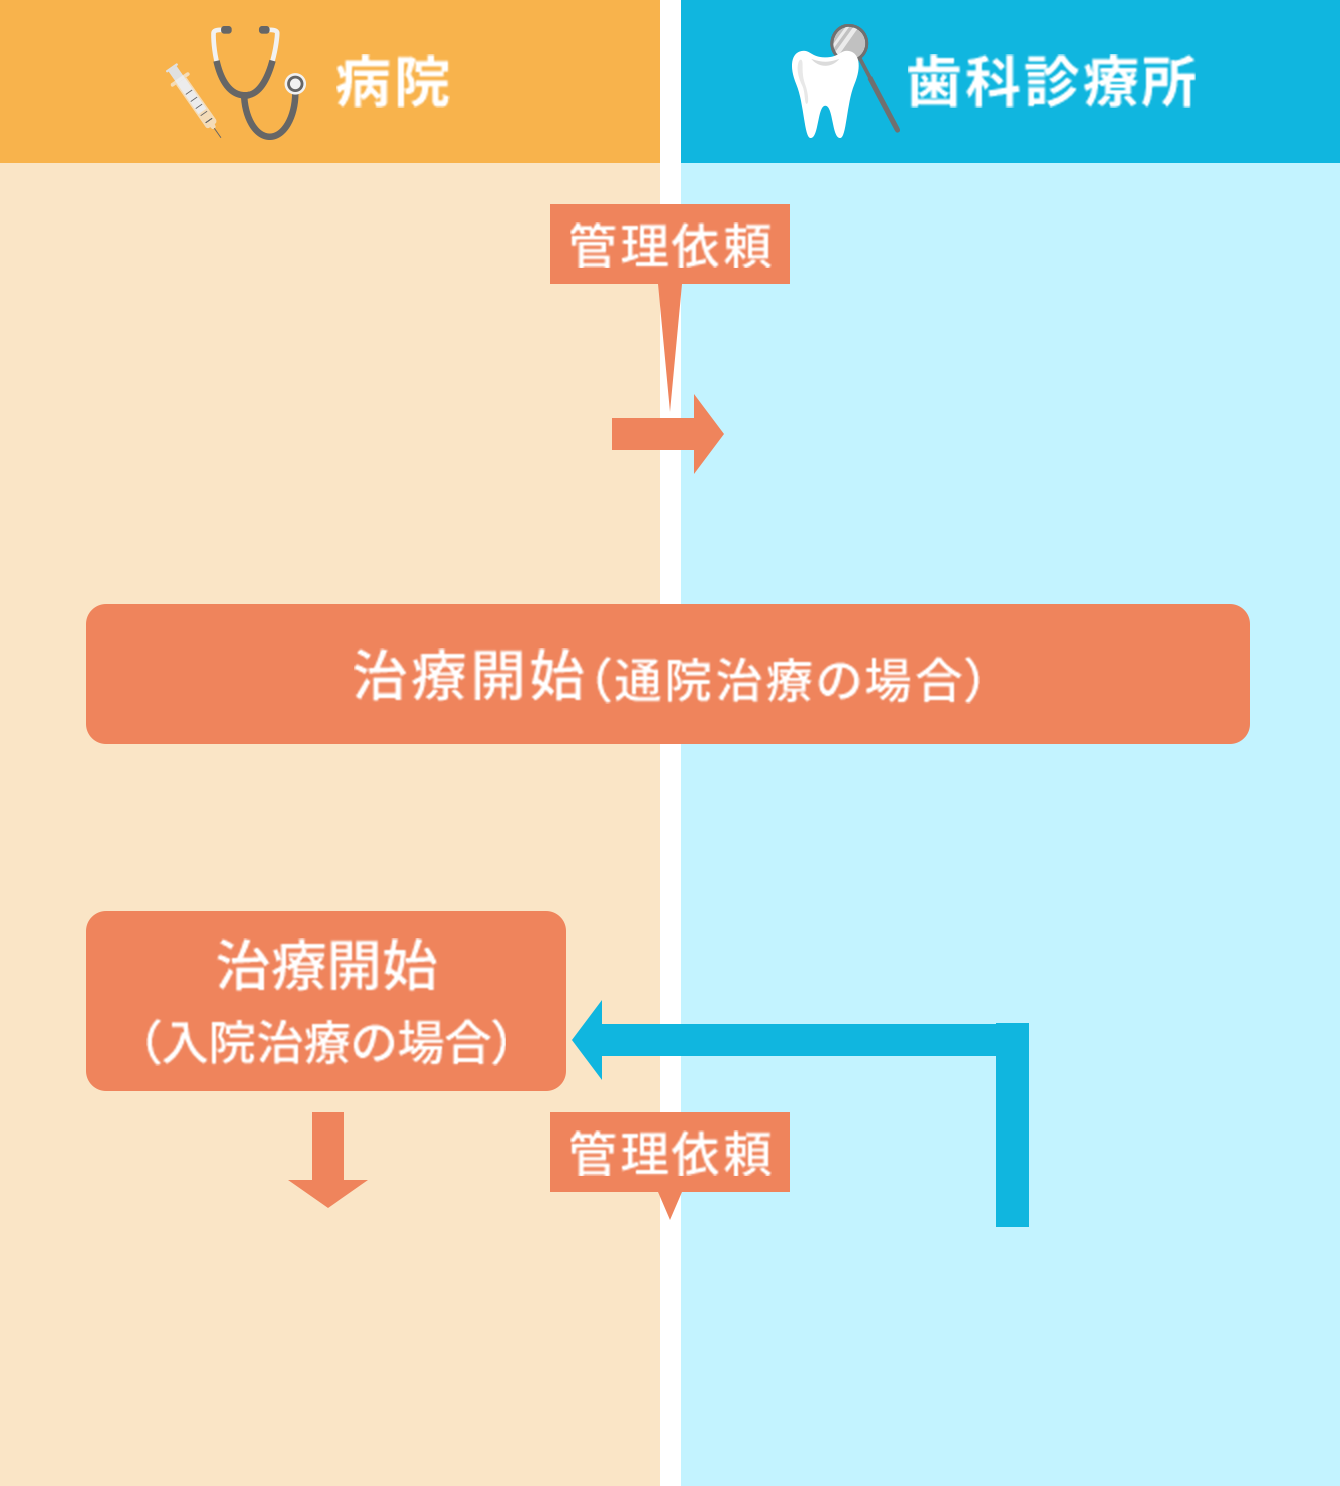 F:がん治療病院（歯科口腔外科なし）と 歯科診療所との連携のパターン